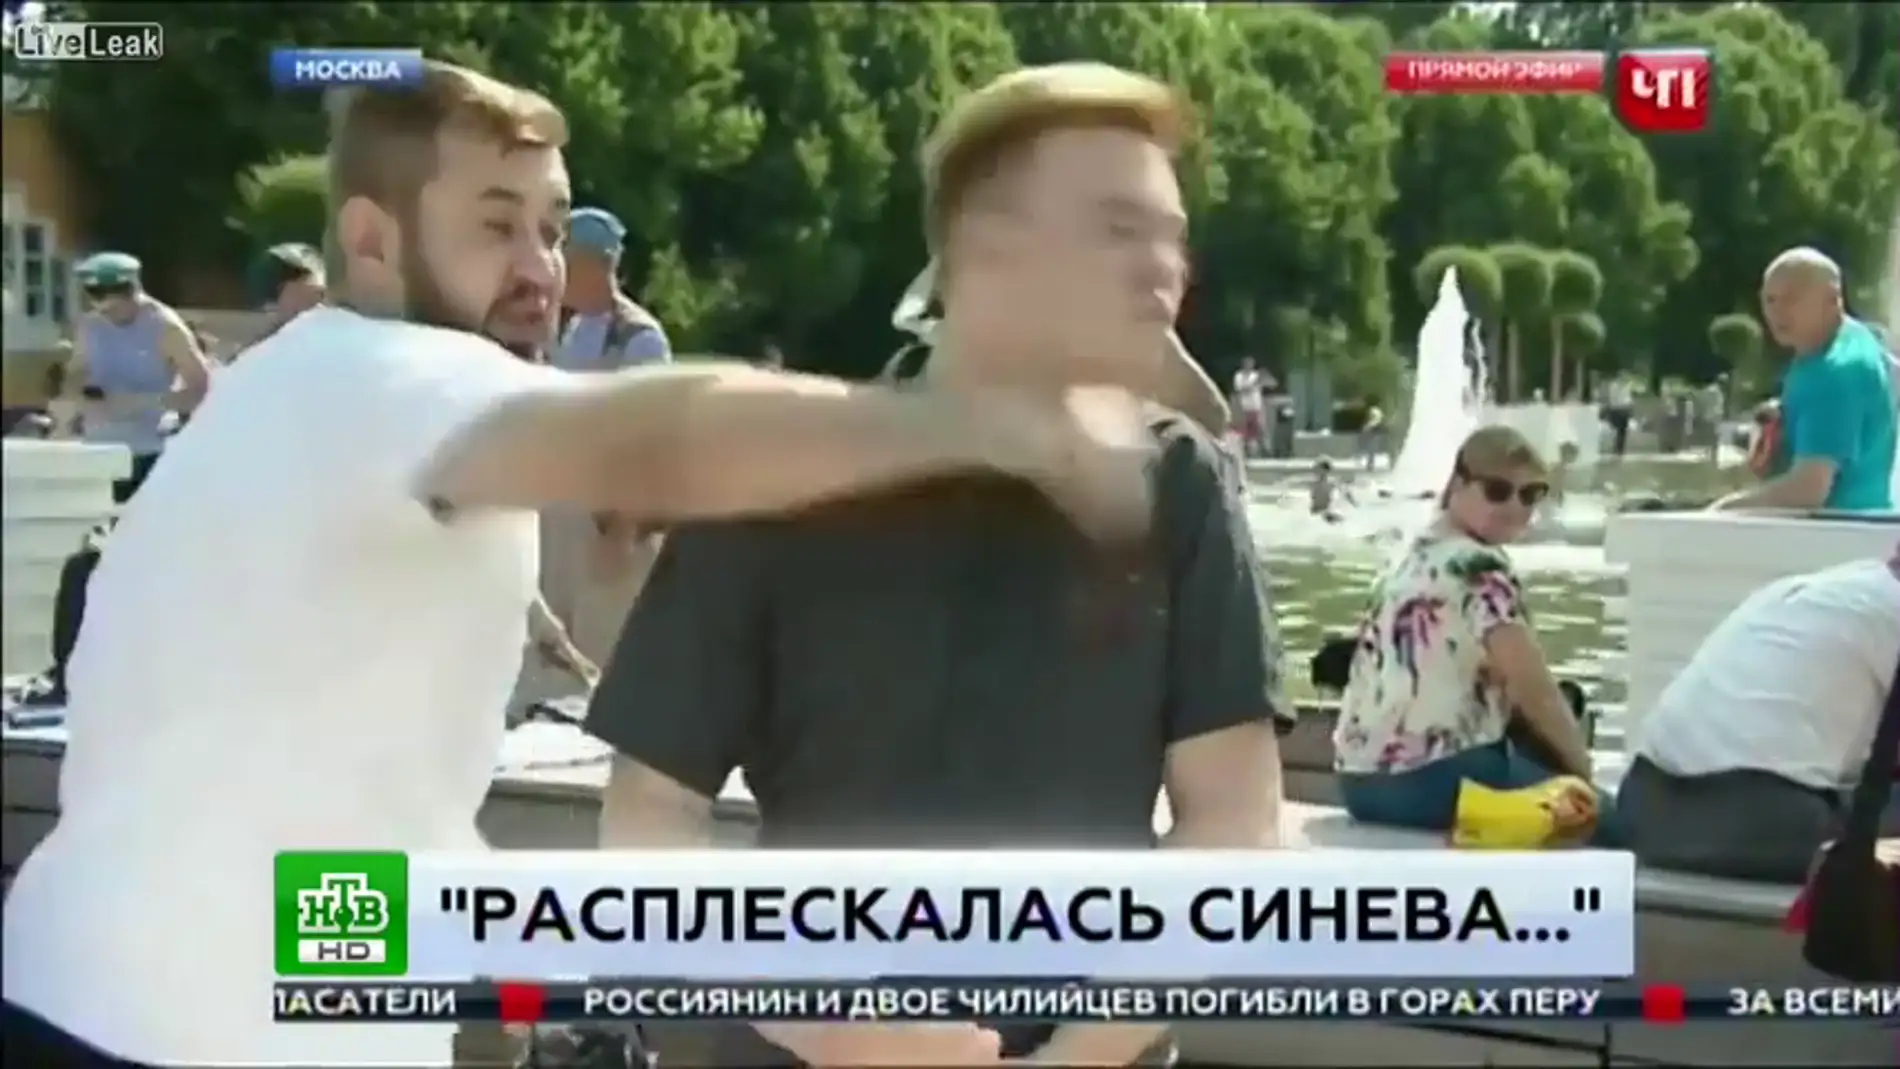 Un periodista ruso recibe un puñetazo en directo